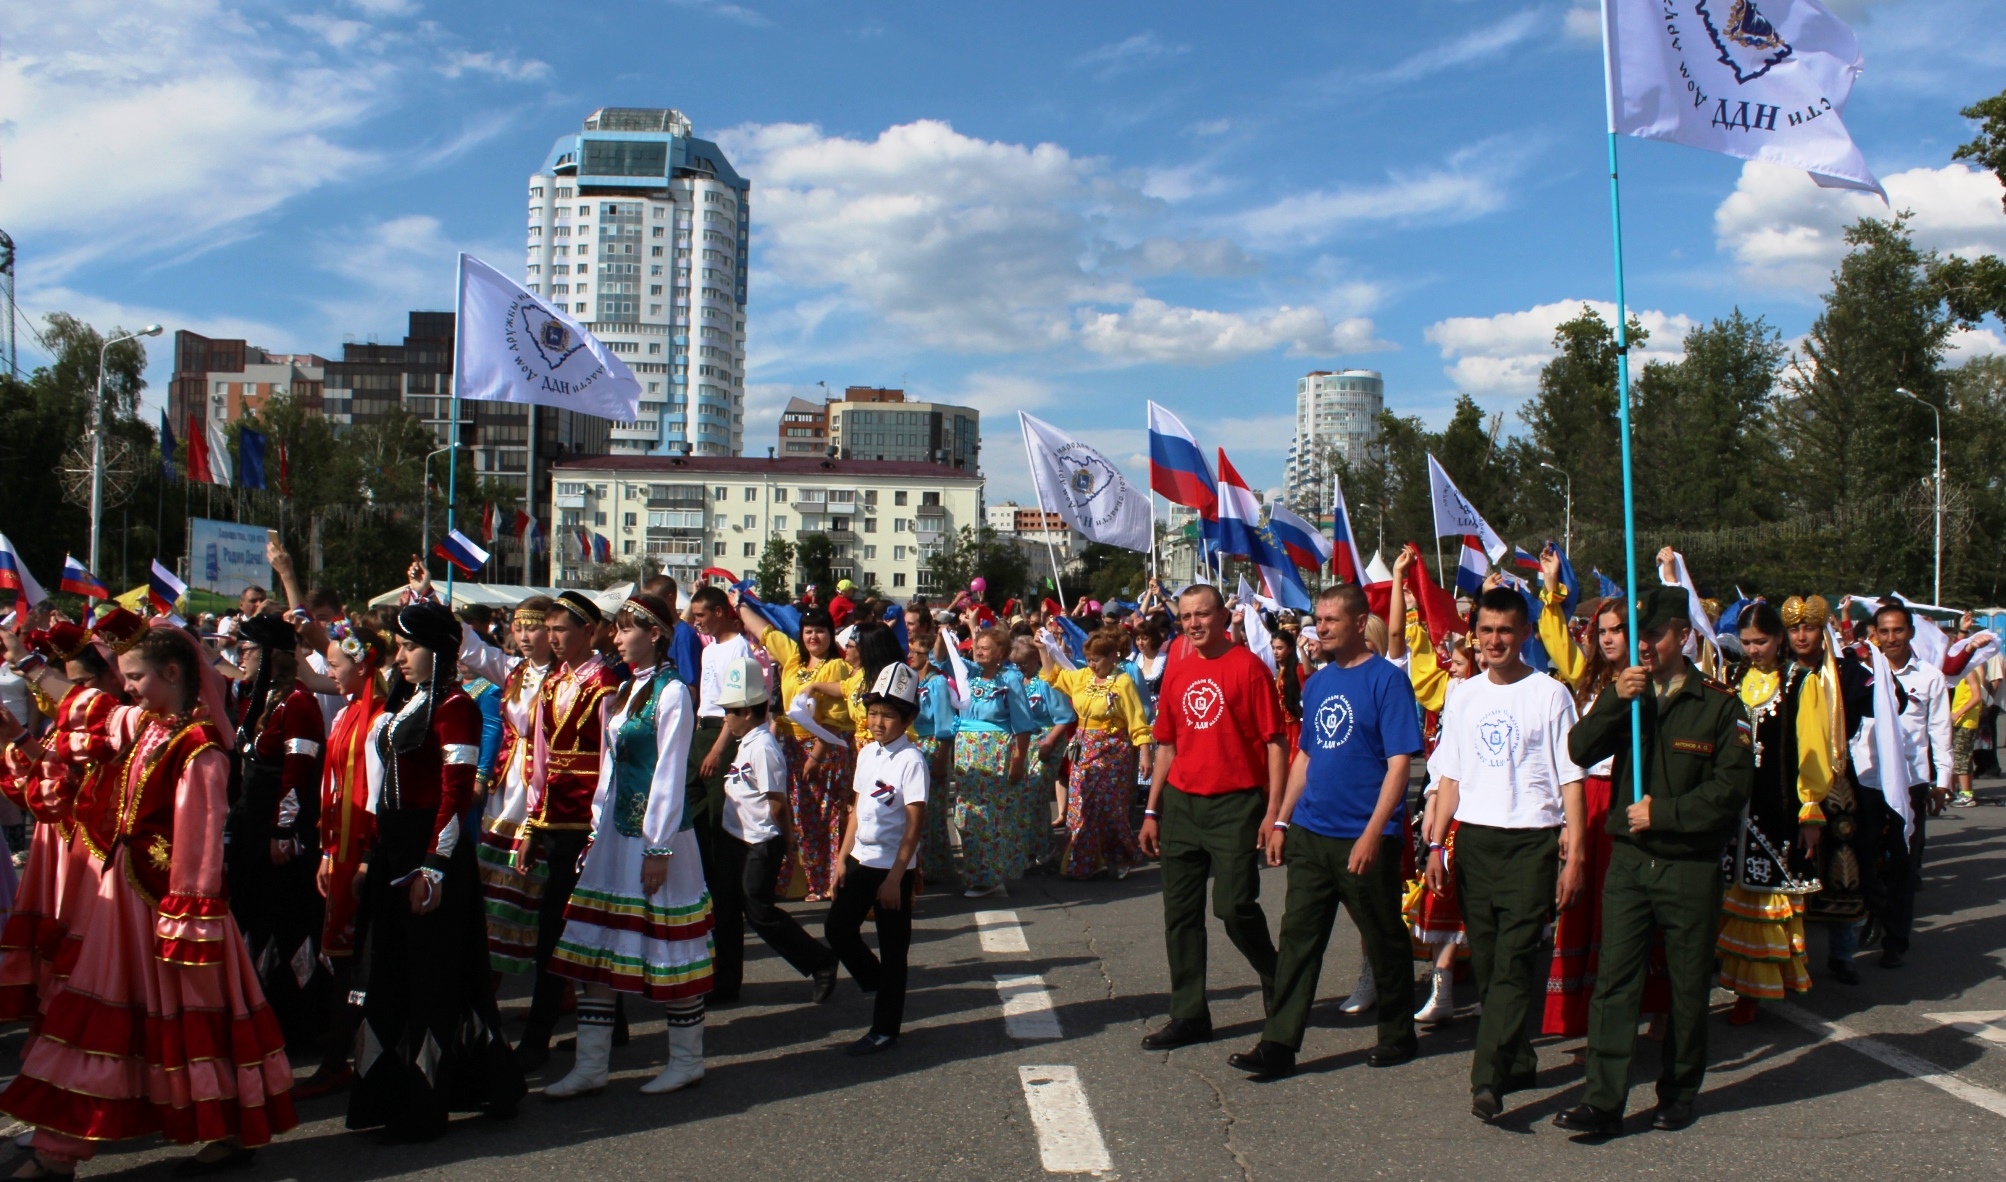 Самара станет участником Всероссийского шествия «Парад дружбы народов» 